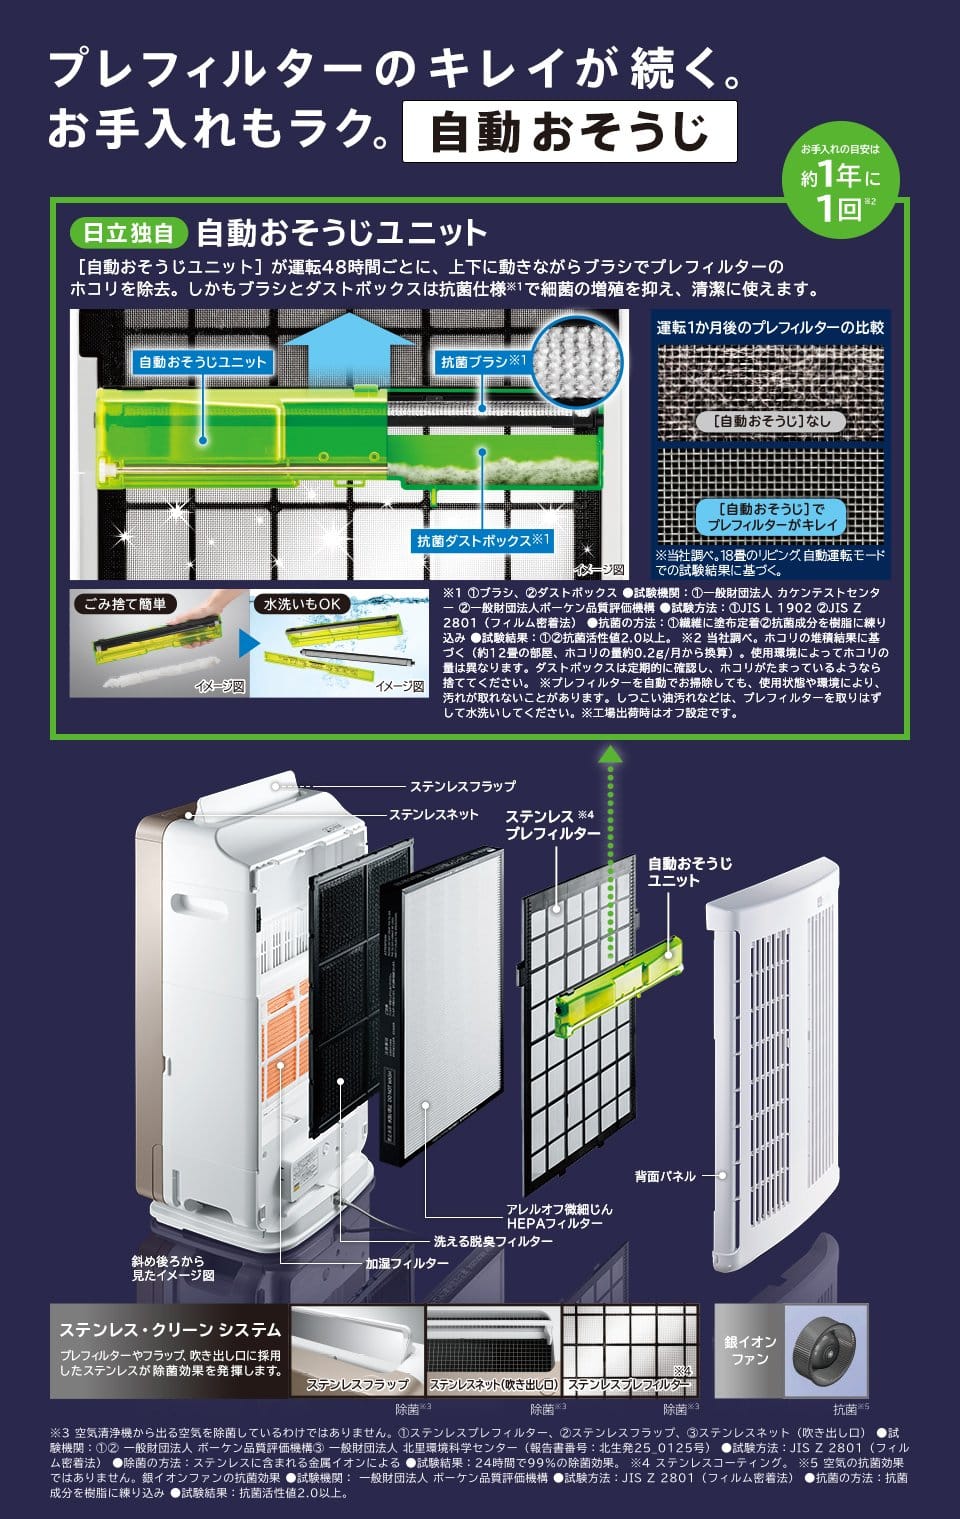 Máy Lọc Không Khí Hitachi Ep-Nvg90-N Nội Địa Nhật